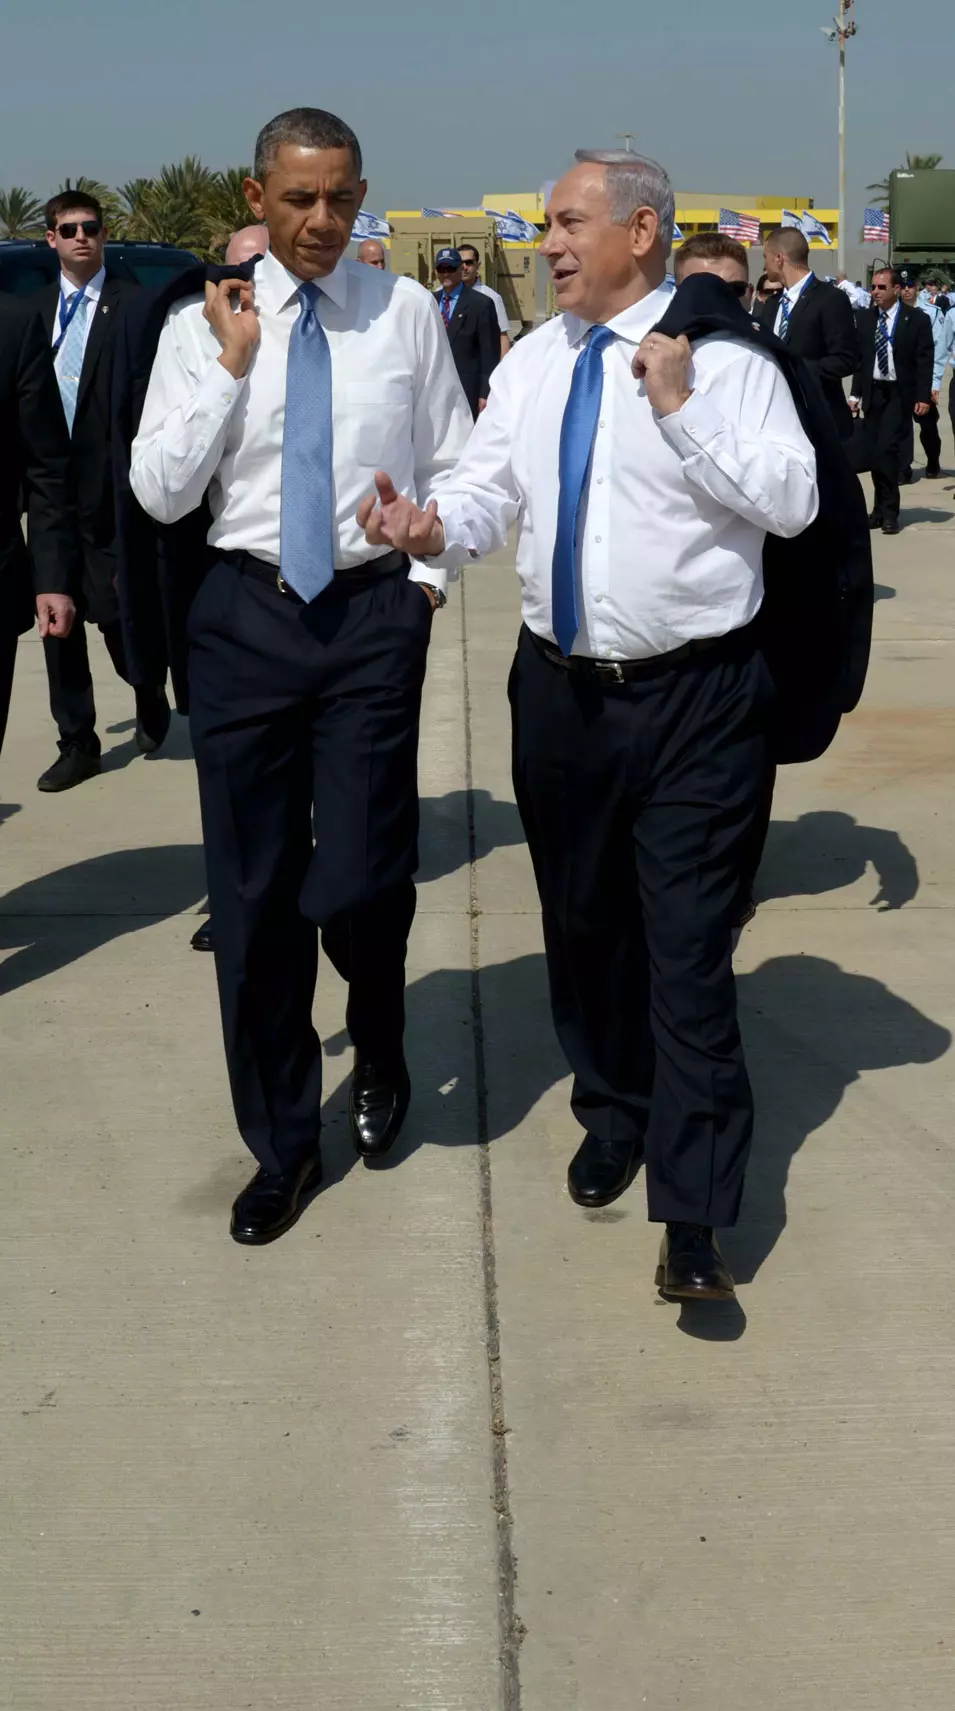 רה"מ בנימין נתניהו עם הנשיא ברק אובמה בביקורו בישראל